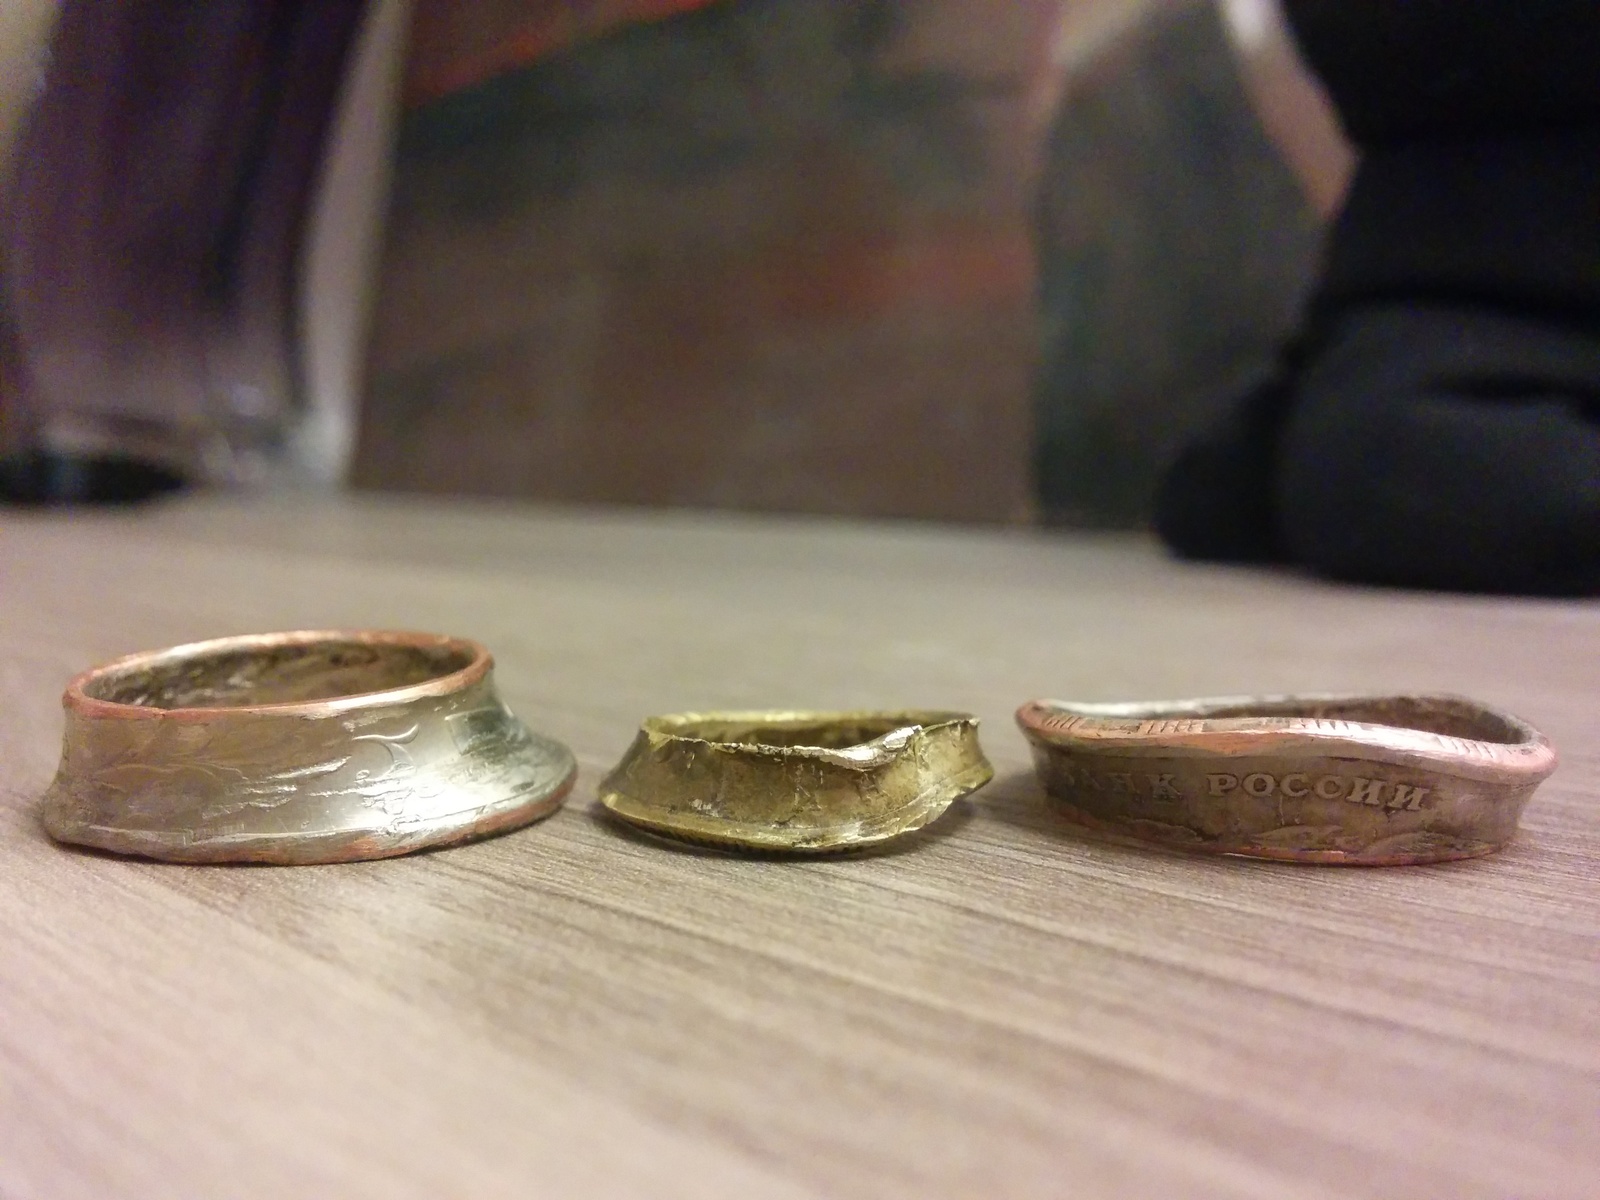 Кольца из монет или путь ювелира-энтузиаста